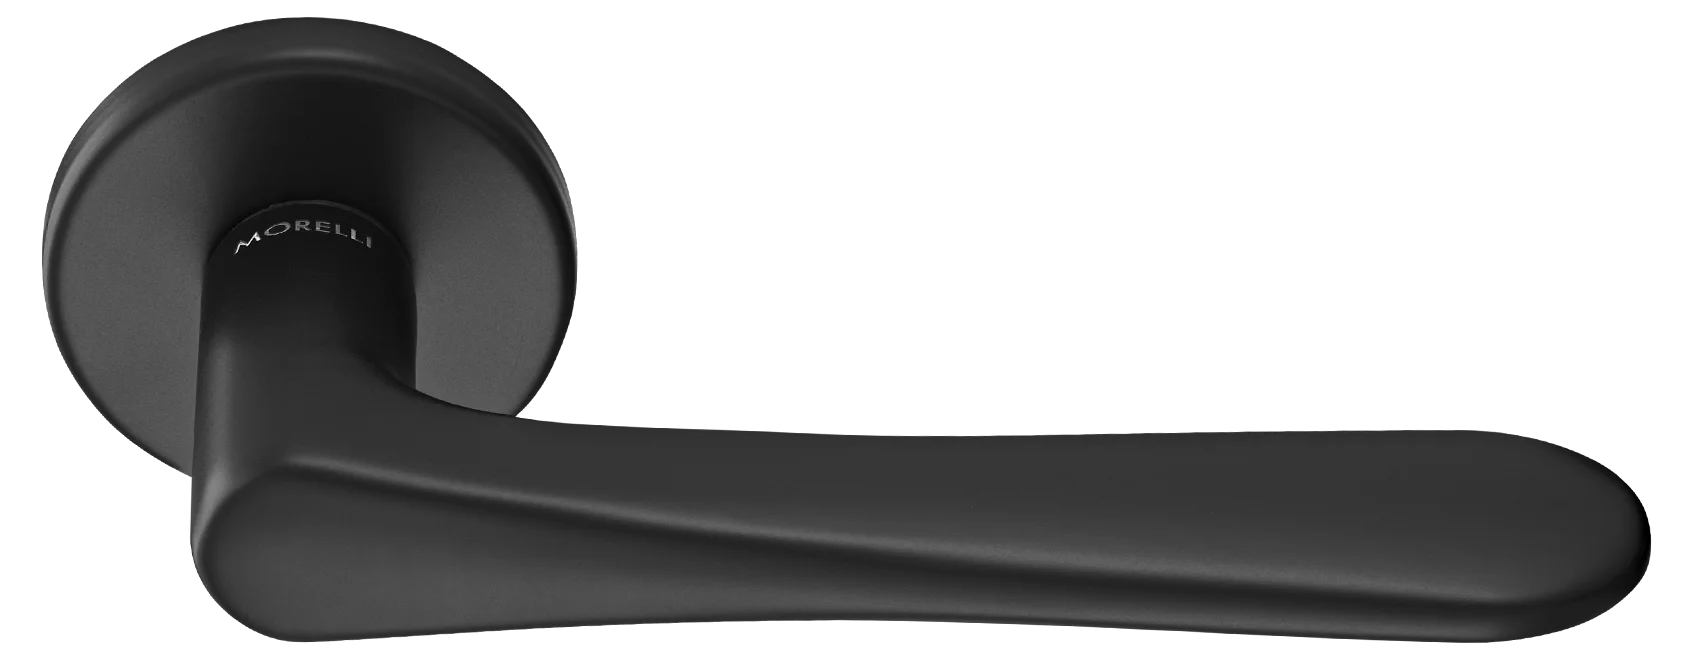 AULA R5 NERO, ручка дверная на розетке 7мм, цвет -  черный фото купить Чебоксары